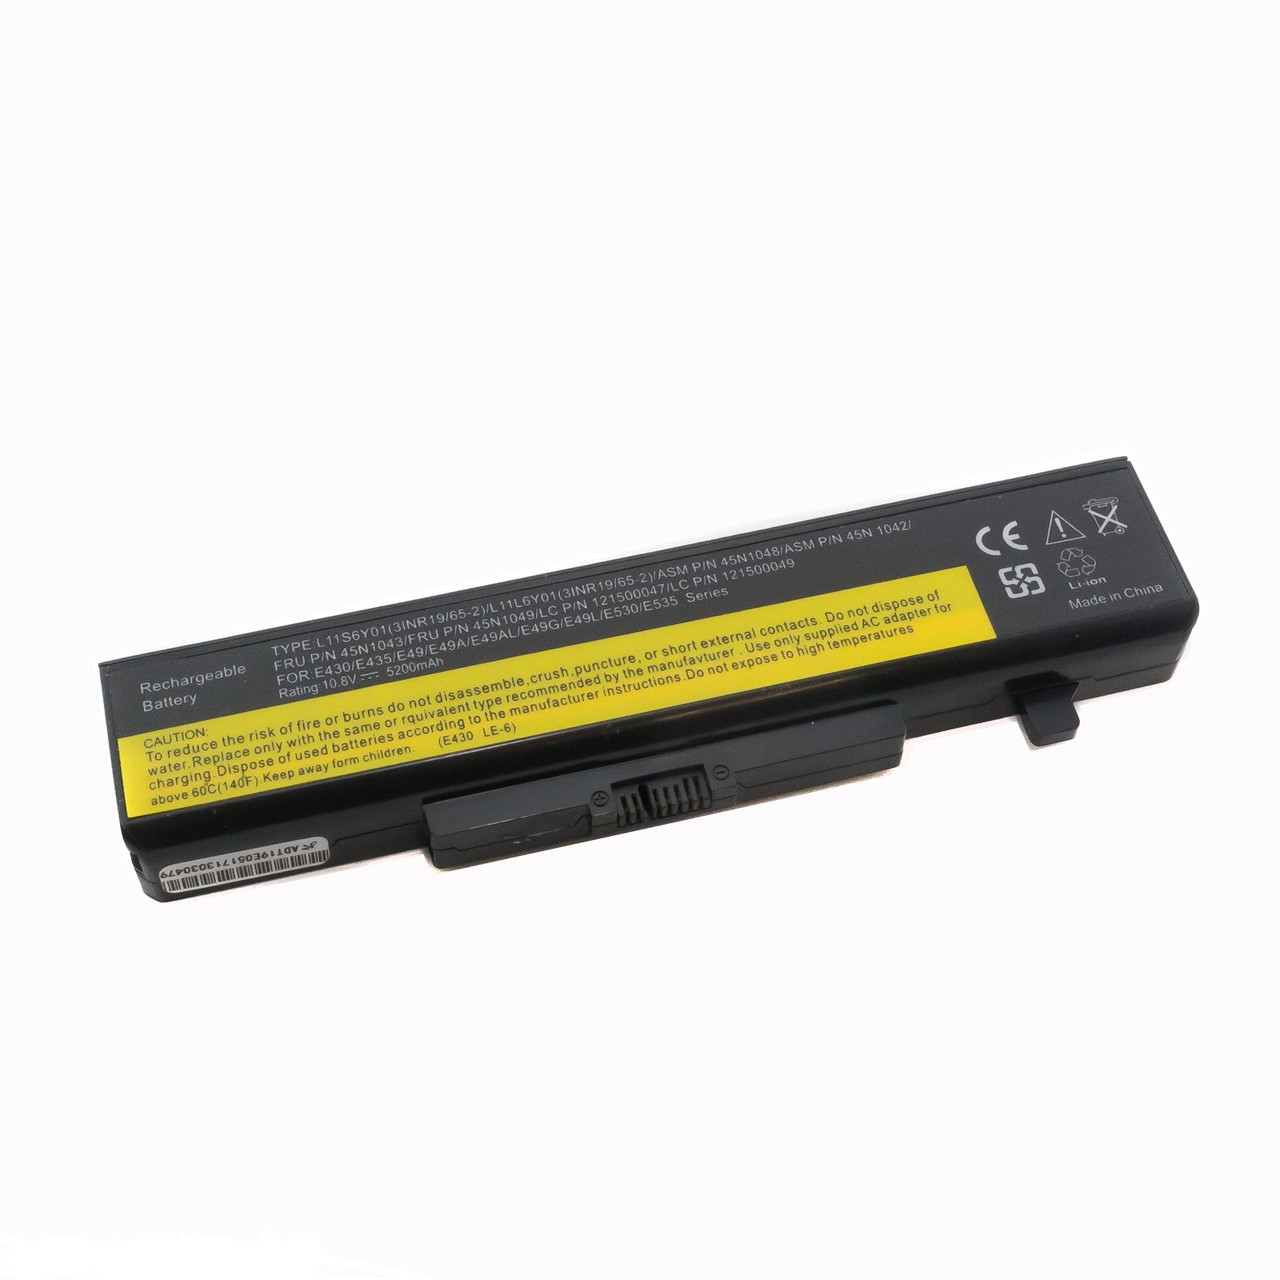 Оригинальный аккумулятор (батарея) для ноутбука Lenovo B480 (L11S6Y01) 10.8V 48Wh